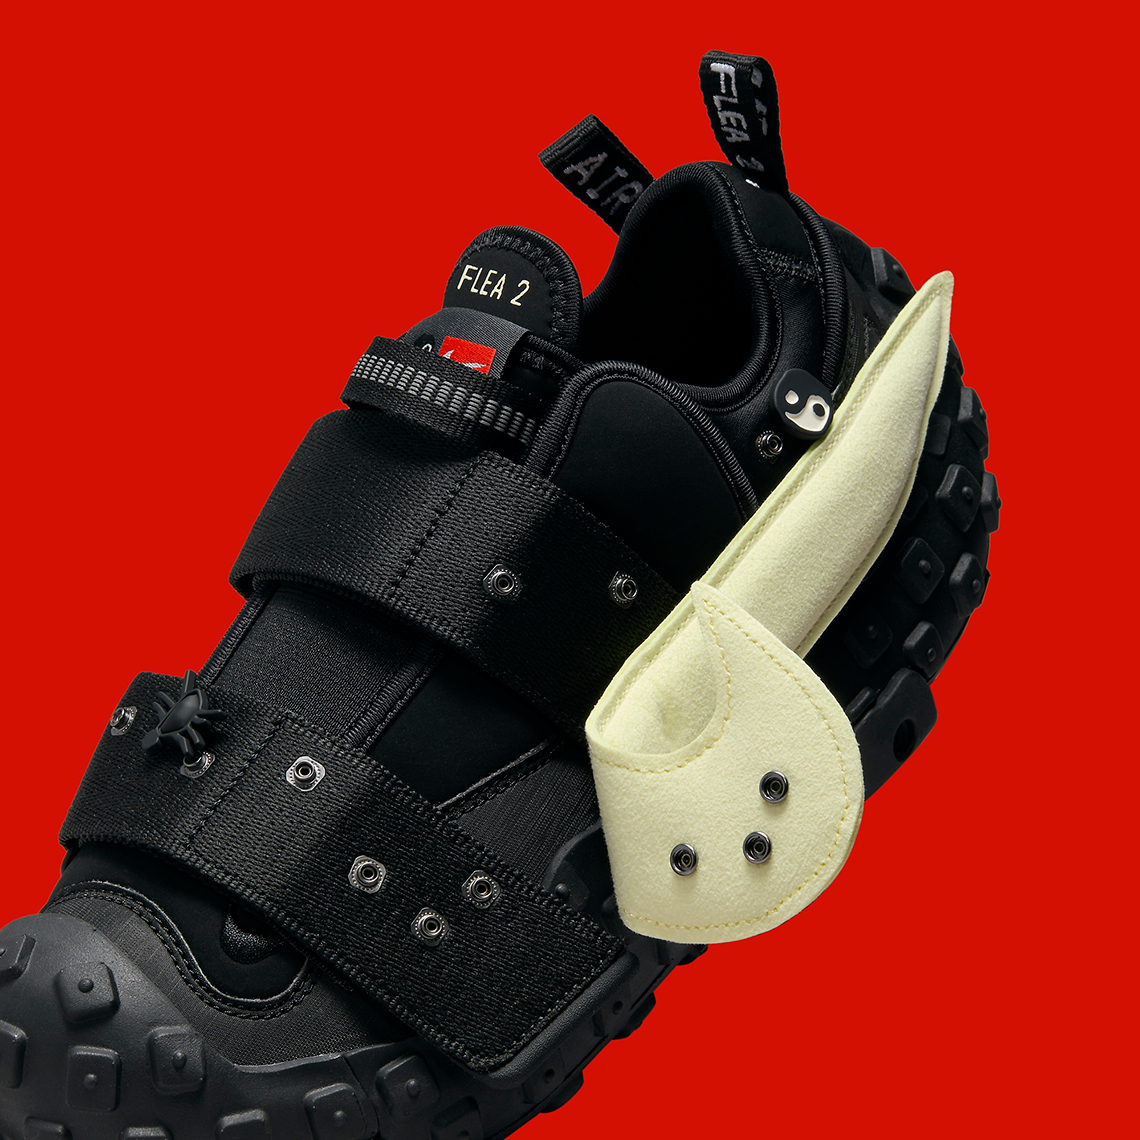 Cpfm Nike Flea 2 Black Alabaster Dv7164 001 Release Date 2